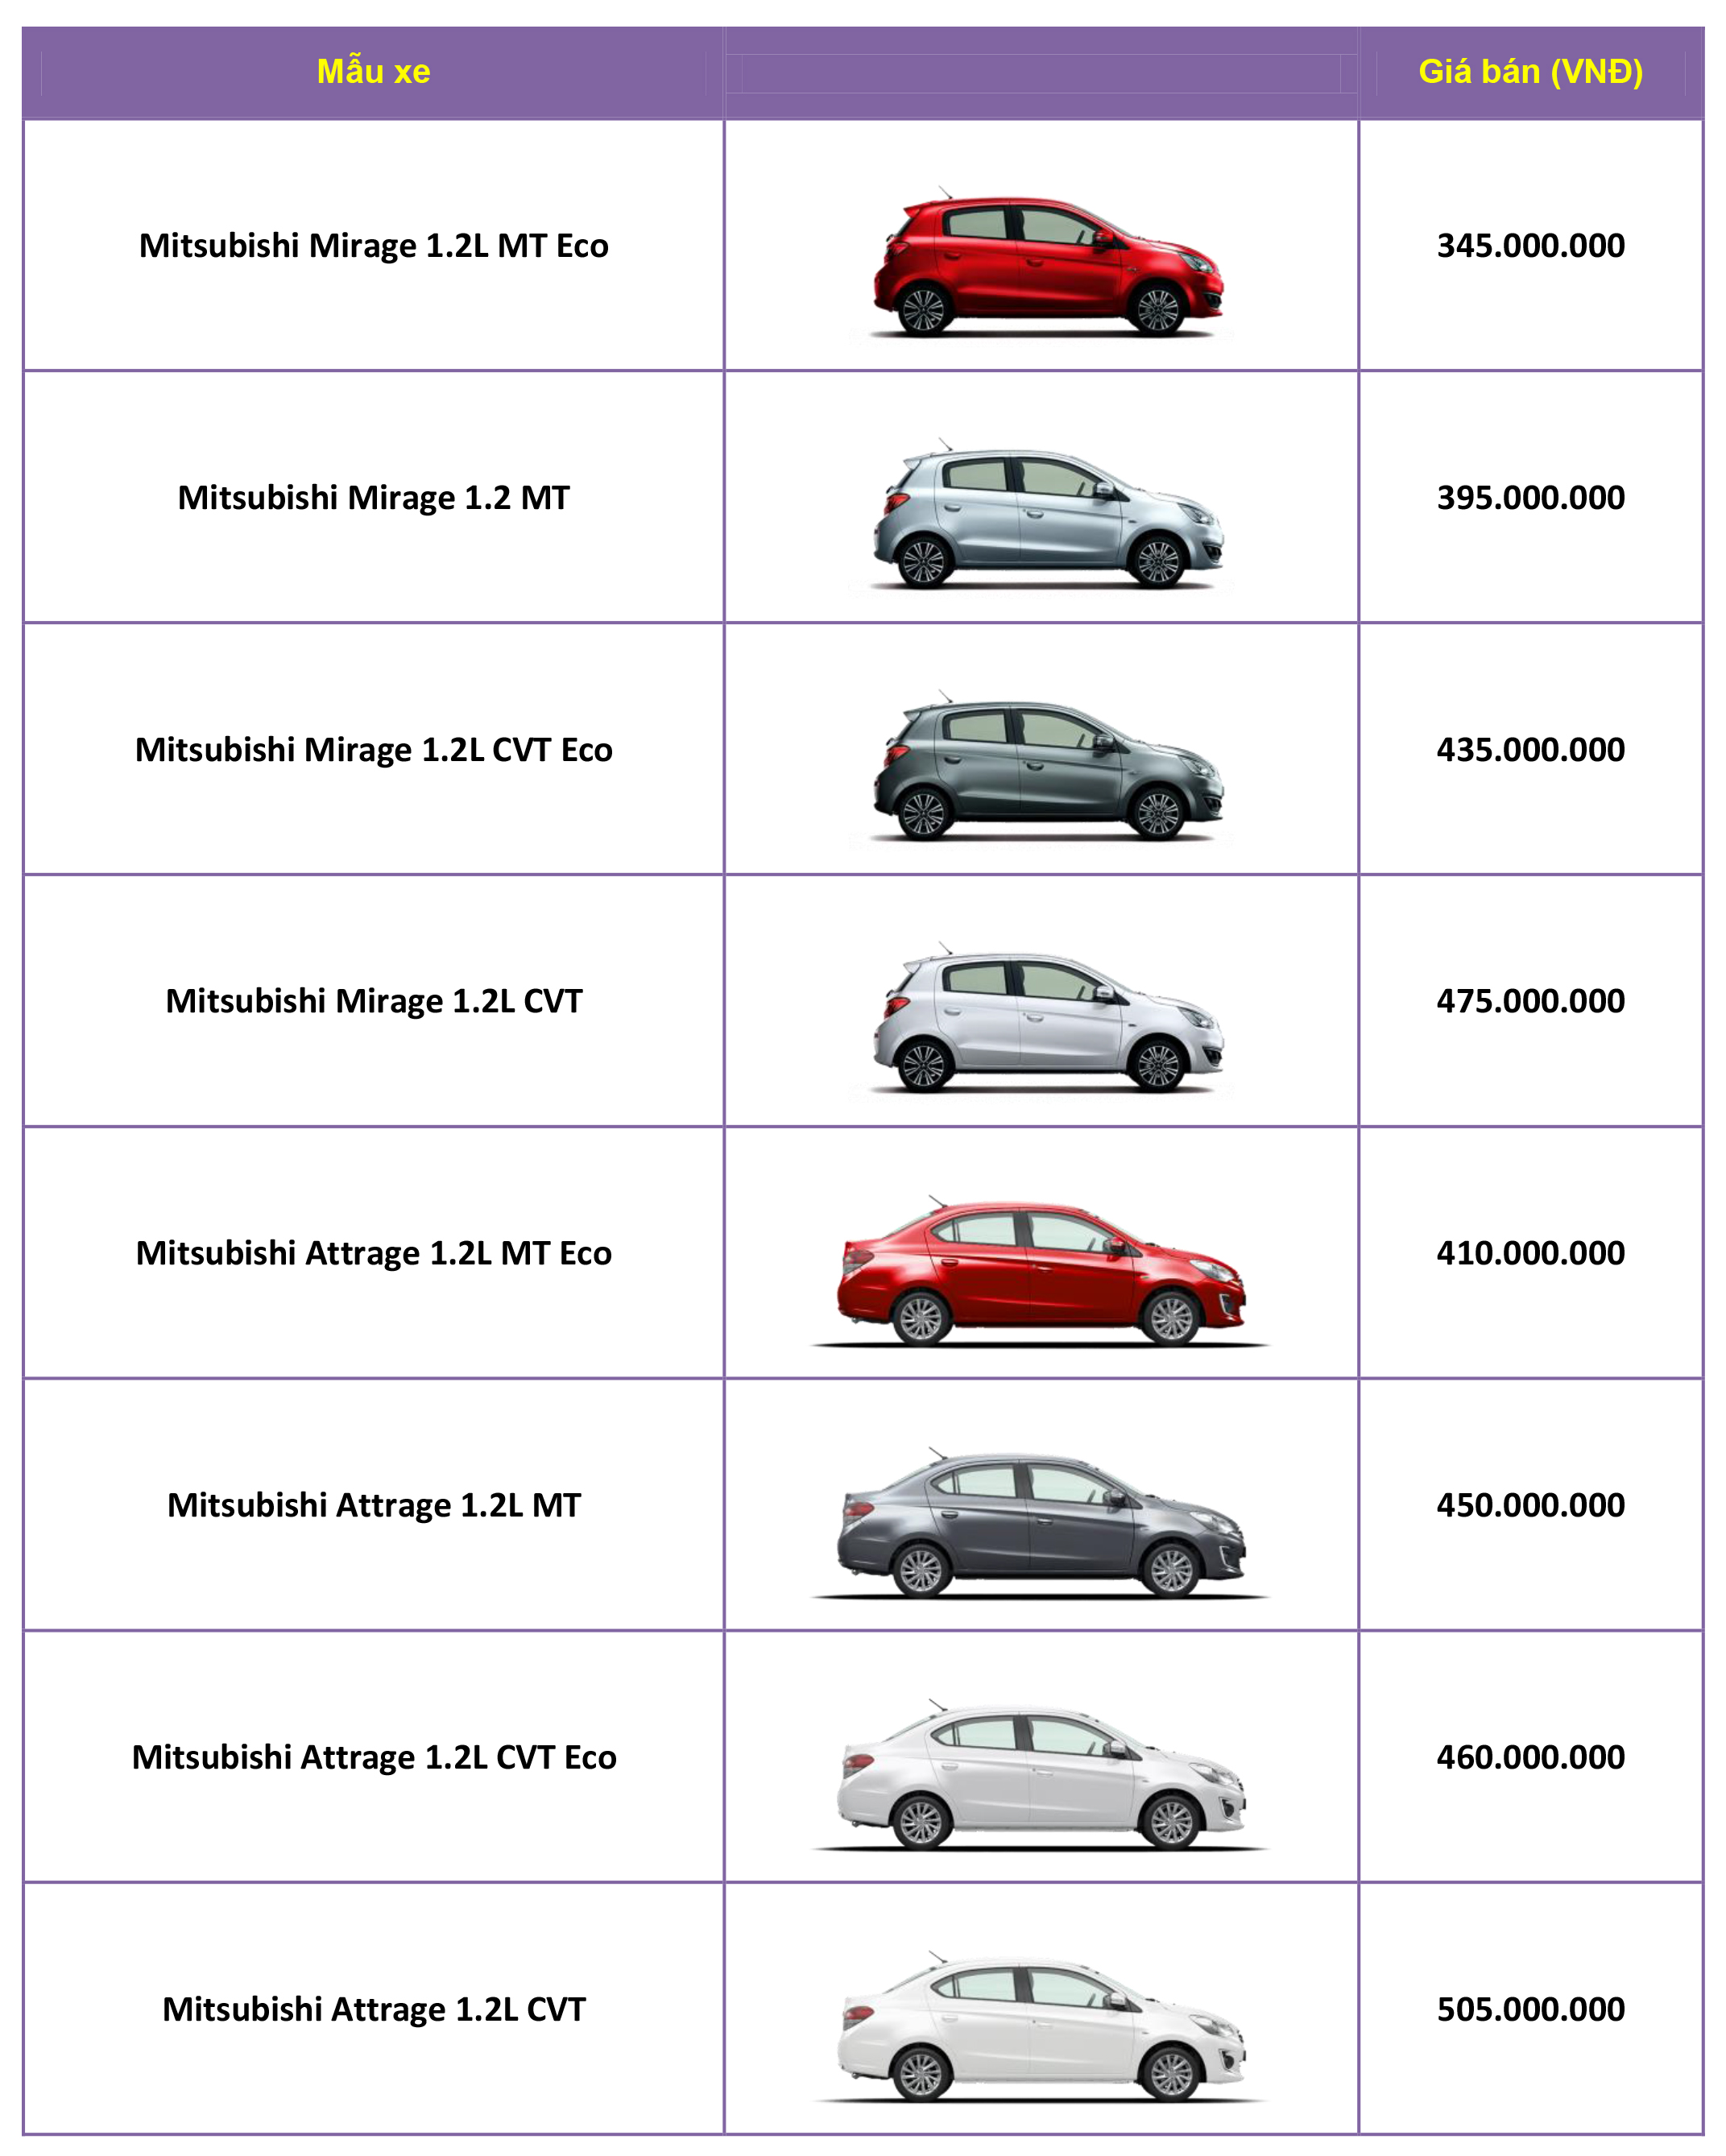 Thị trường ô tô Việt: Bảng giá các mẫu xe Mitsubishi mới nhất tại Việt Nam